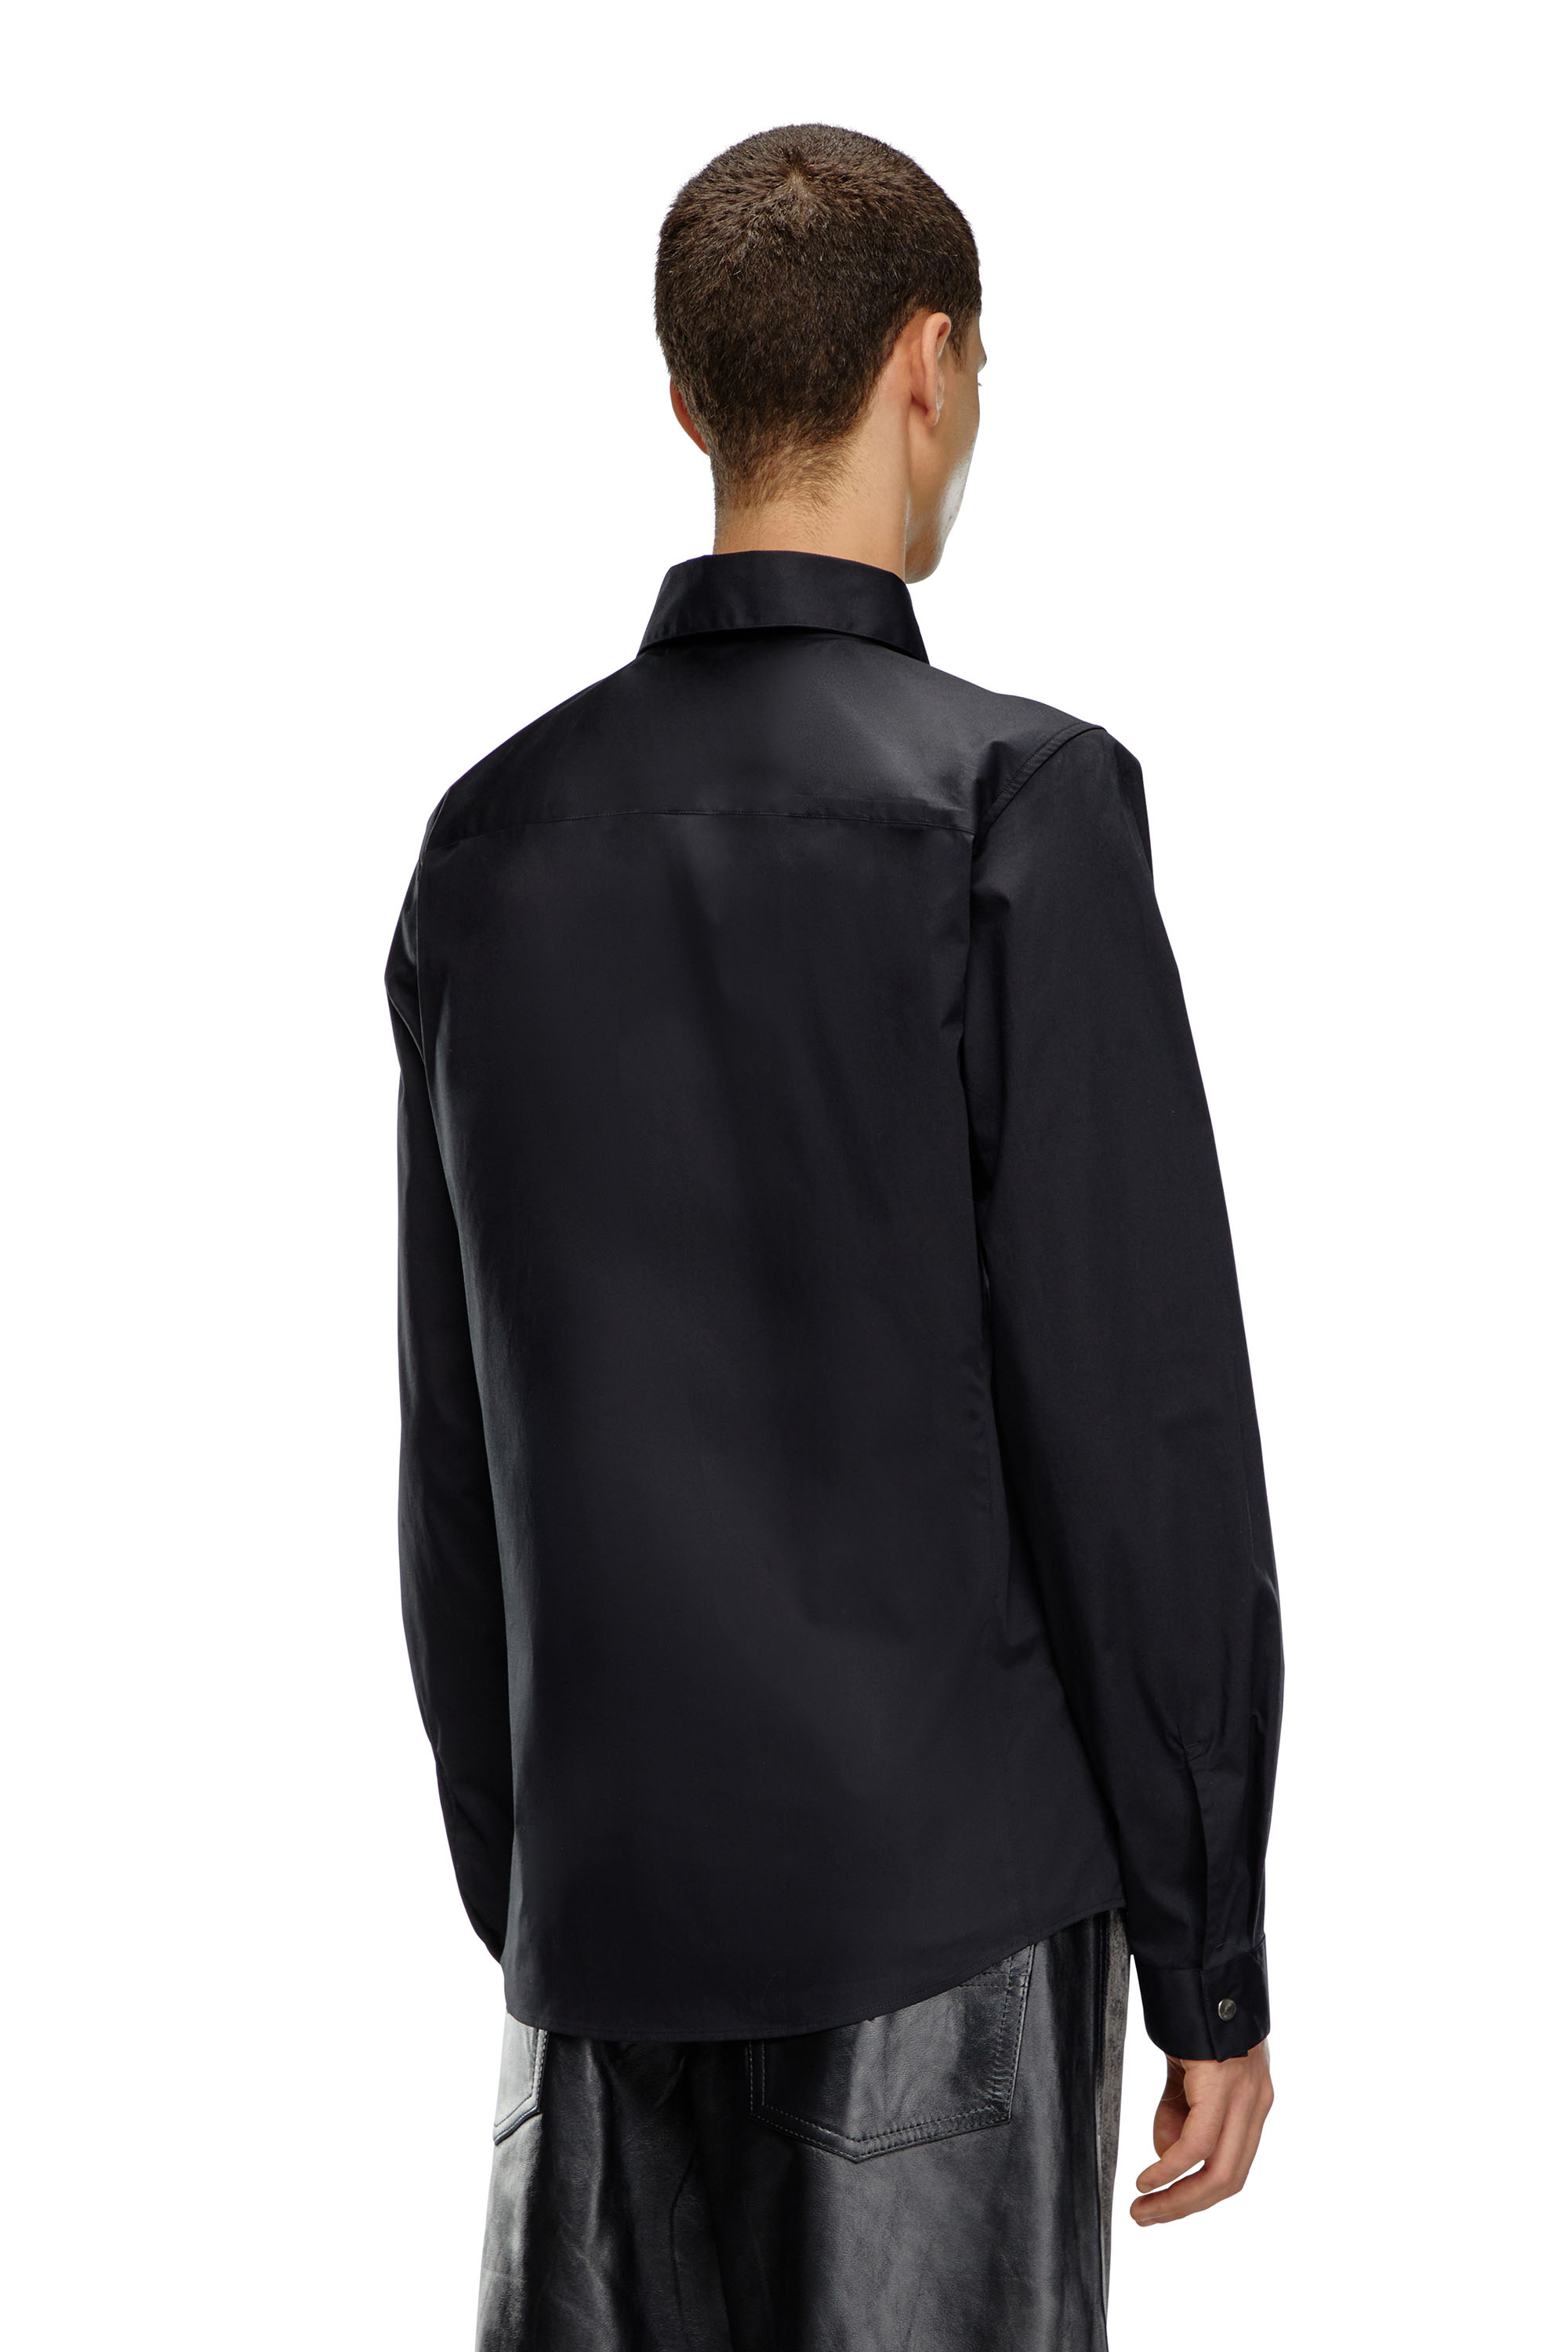 Diesel - S-FITTY-A, Homme Chemise élégante avec col à logo brodé in Noir - Image 3